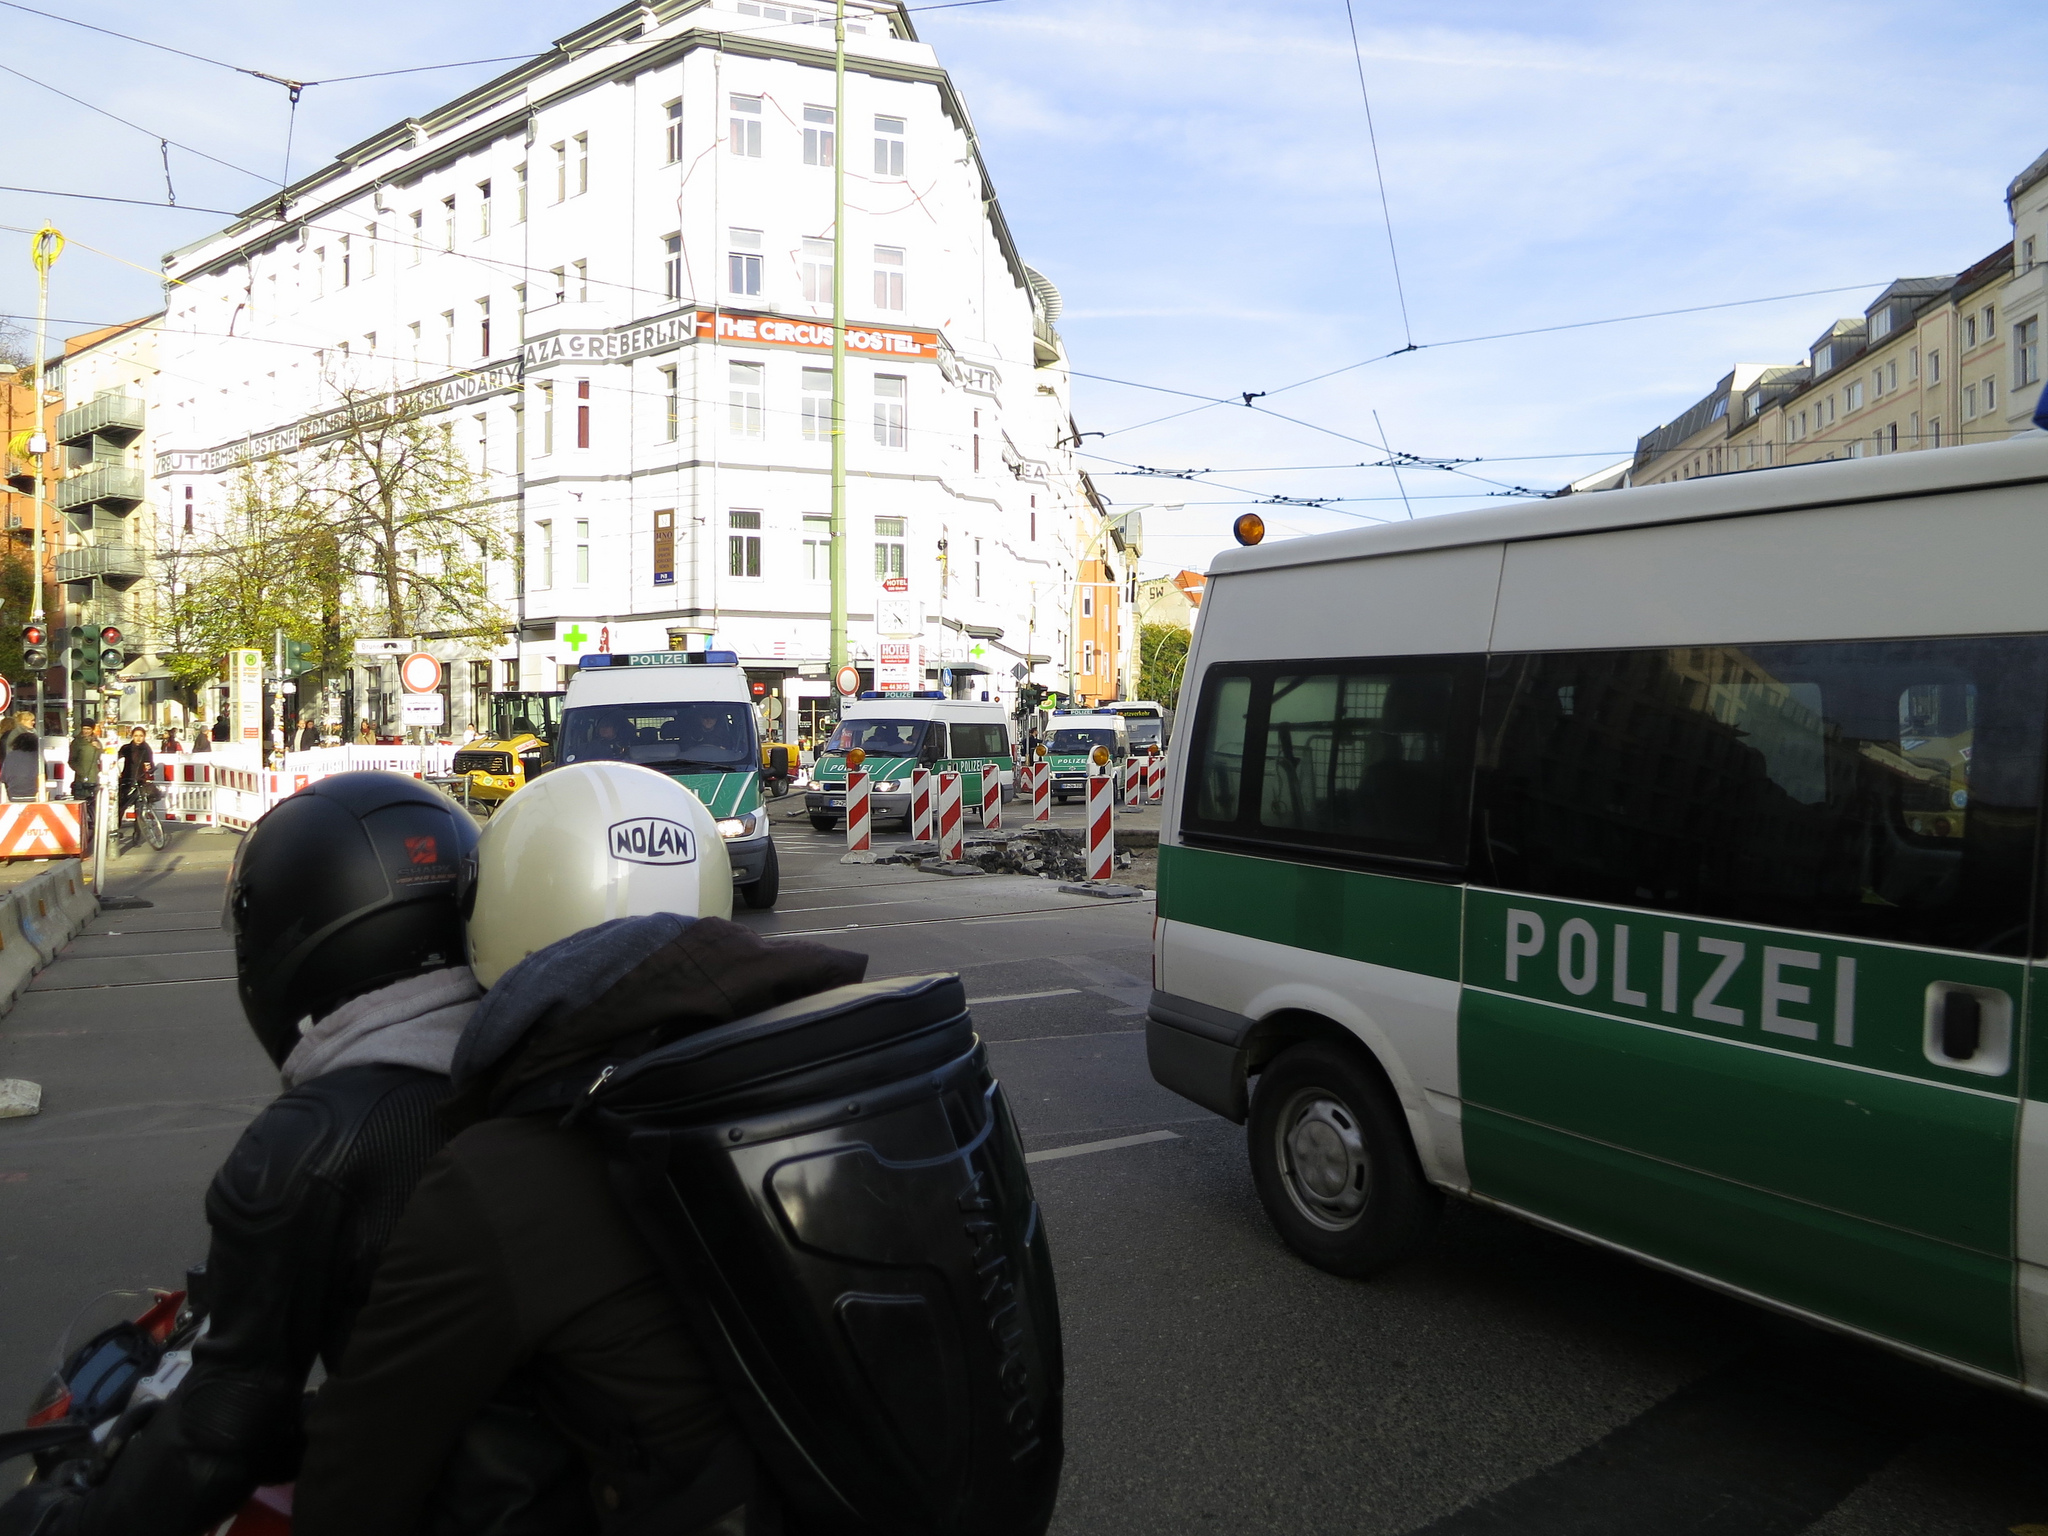 Γερμανία: Έφοδοι της αστυνομίας για τον εντοπισμό ακροδεξιών που φέρεται να σχεδίαζαν ένοπλες επιθέσεις